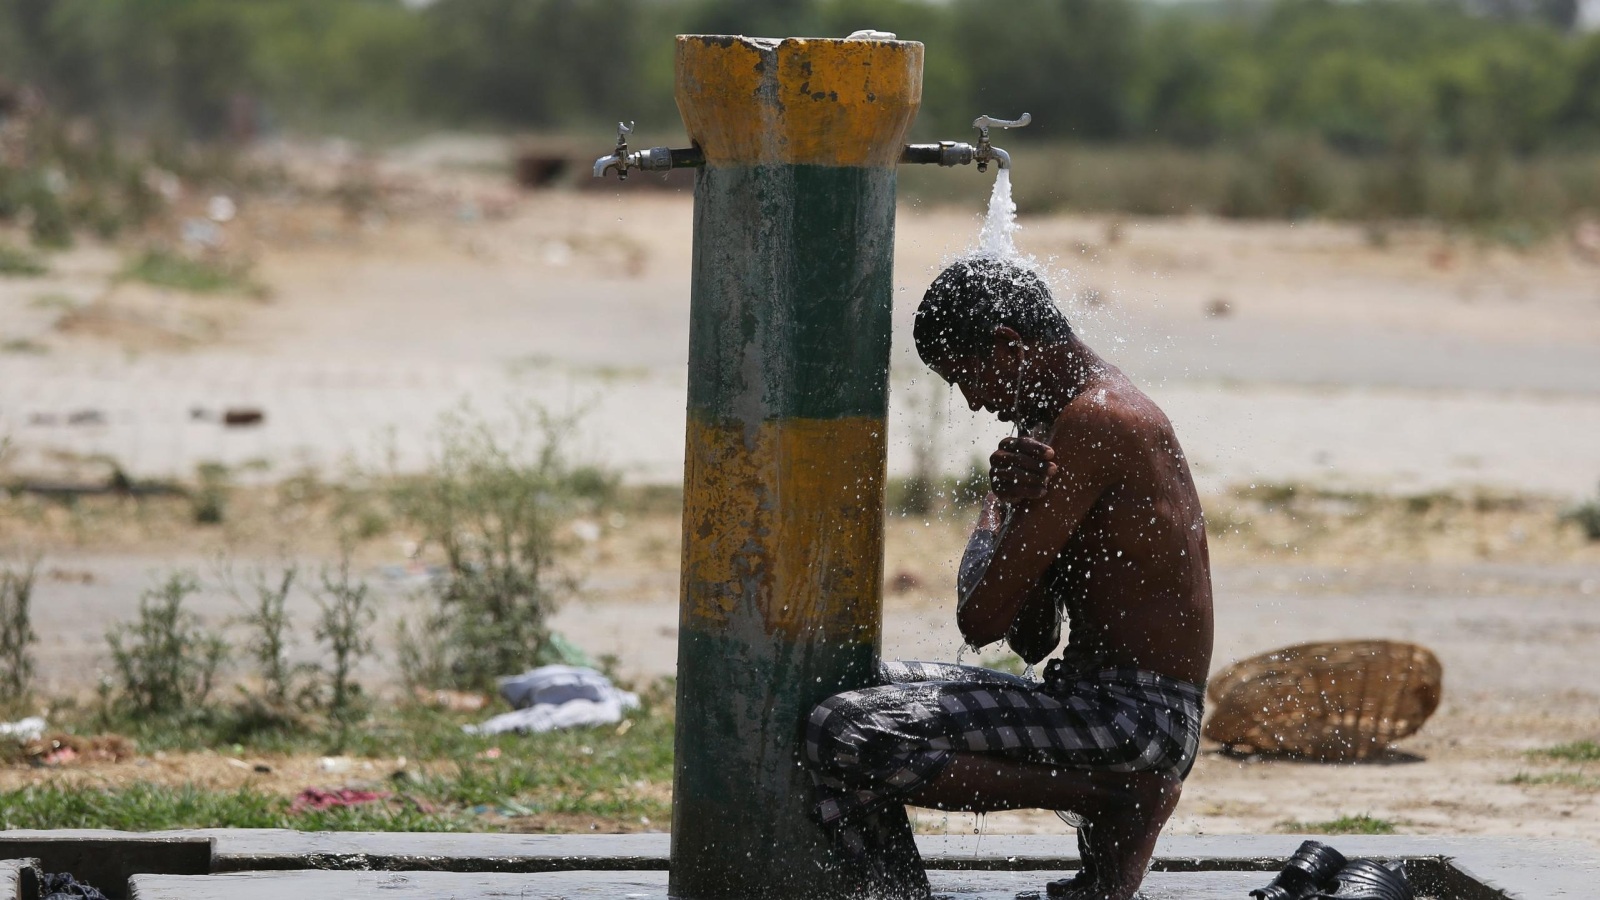 شاب هندي يلوذ بماء حنفية في ظهيرة شديدة الحرارة خلال أسبوع شهد مقتل أكثر من 800 شخص بسبب موجة الحر